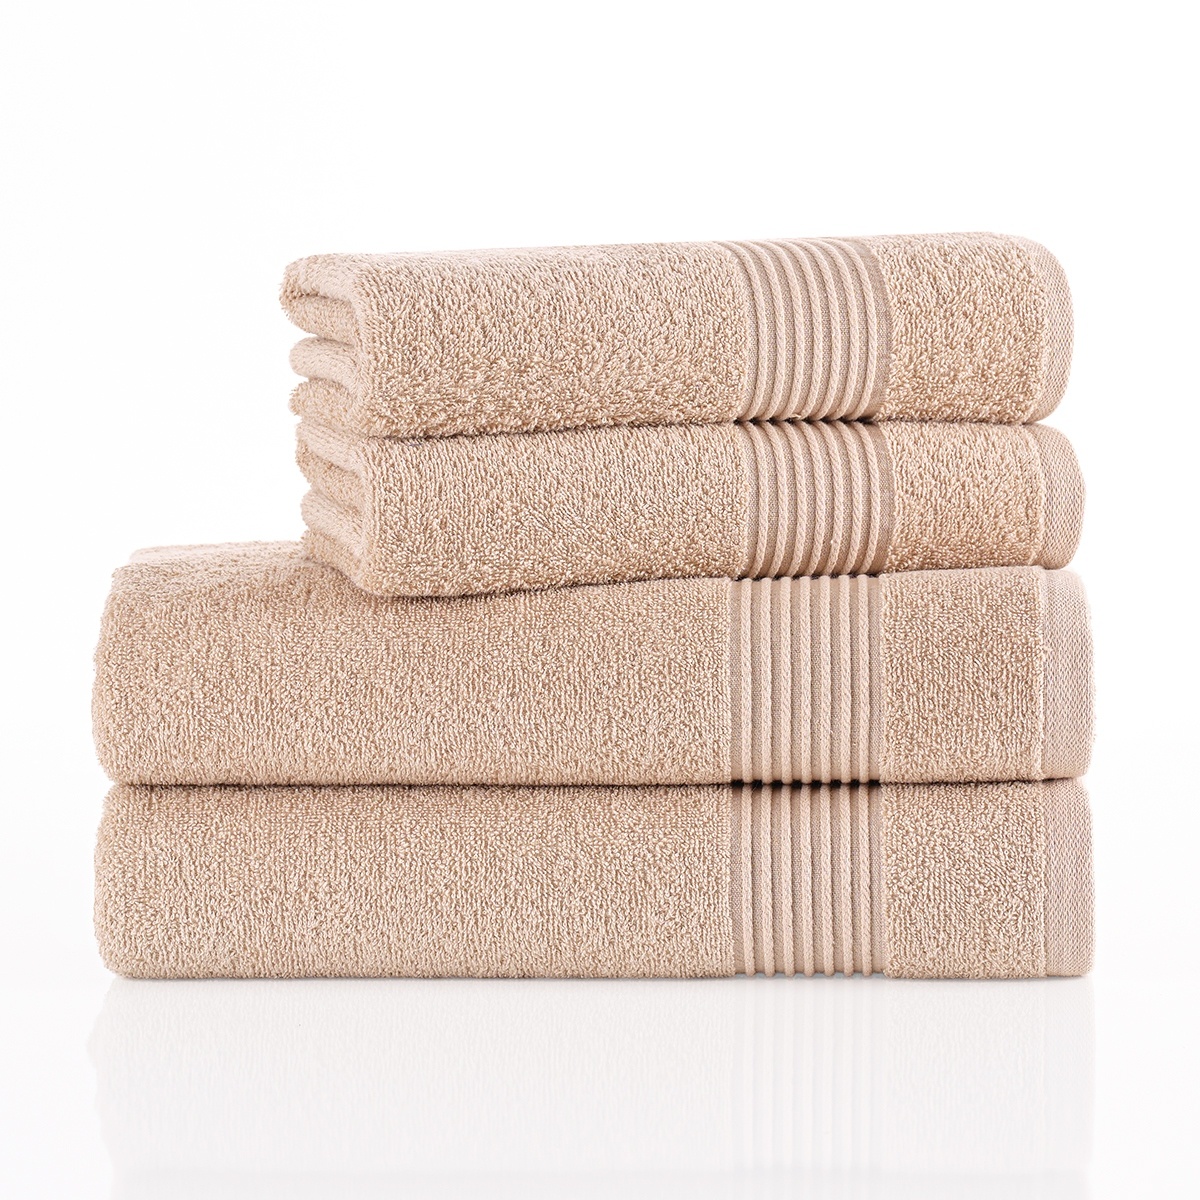 Fotografie 4Home Sada osušek a ručníků Comfort béžová, 2 ks 70 x 140 cm, 2 ks 50 x 100 cm